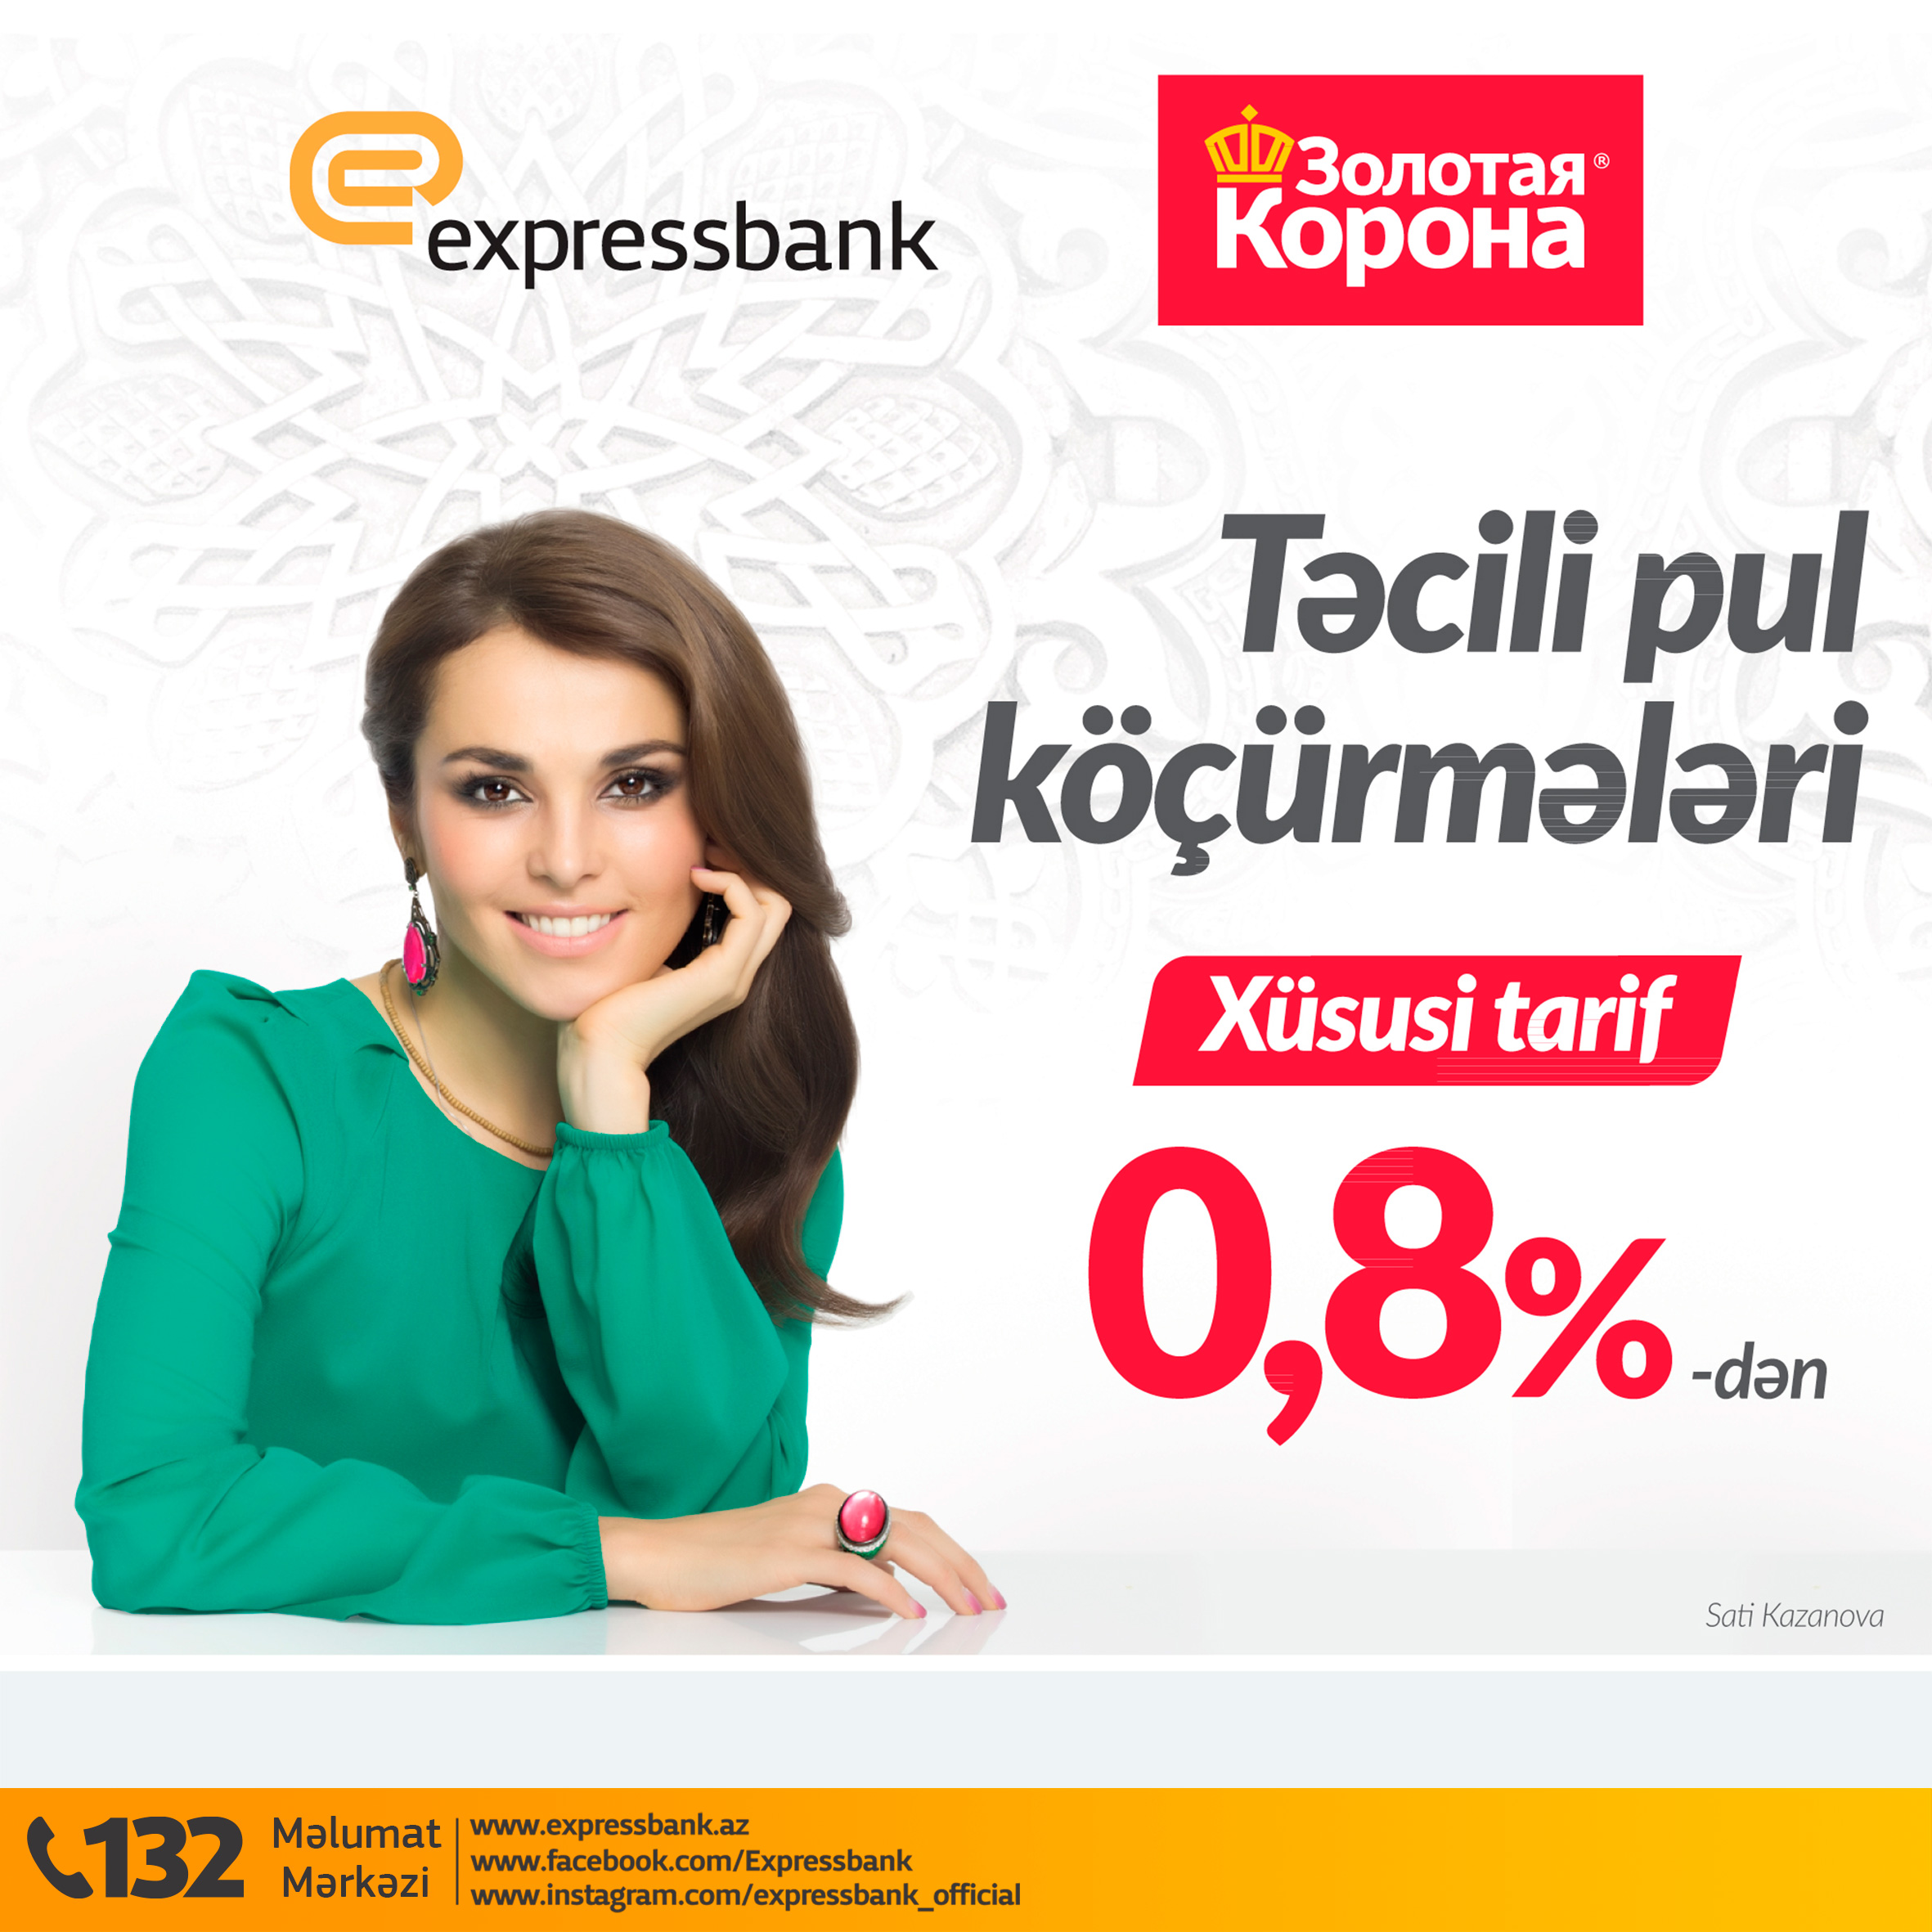 Expressbank-dan “Zolotaya Korona” müştəriləri üçün daha əlverişli təklif